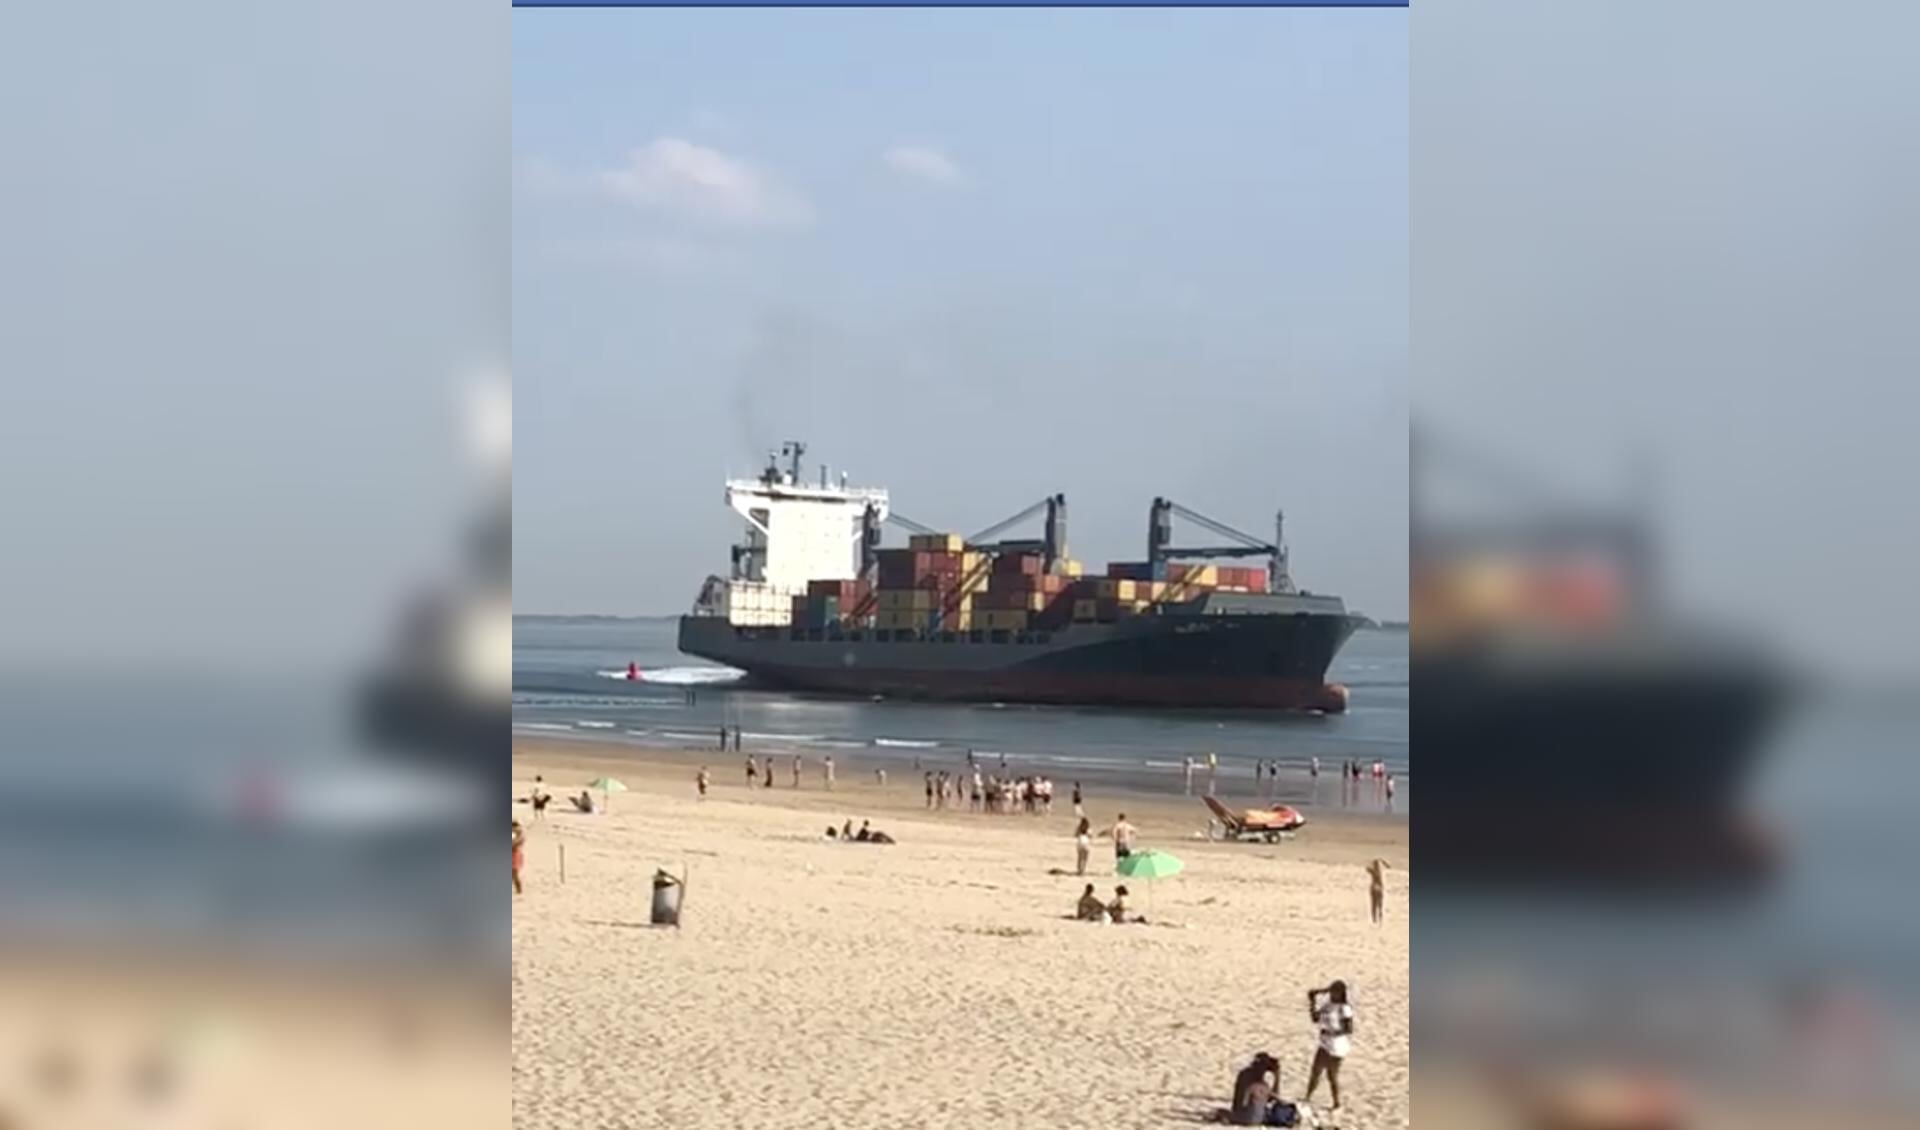 Het schip vaarde uiteindelijk langs het strand weg. 